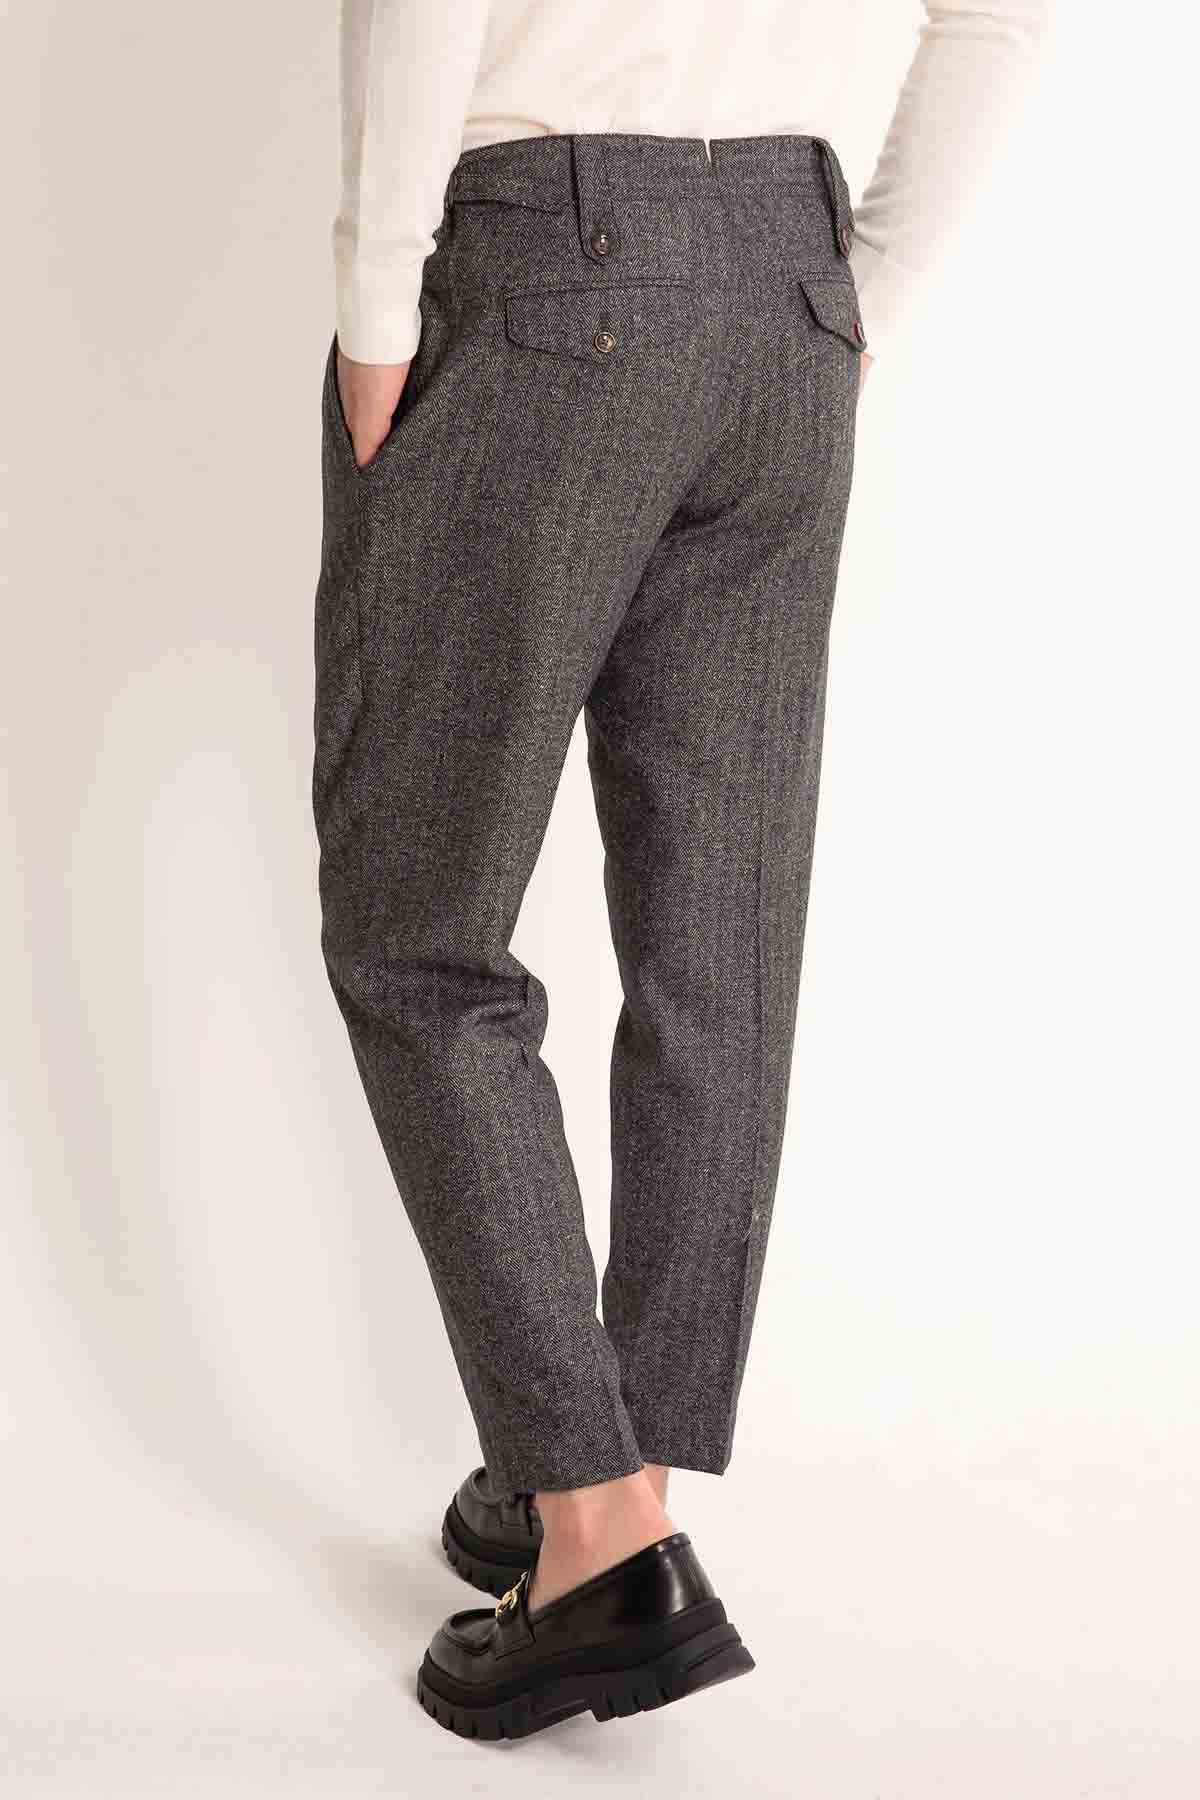 Pantaloni Torino Rebel Fit Pantolon-Libas Trendy Fashion Store